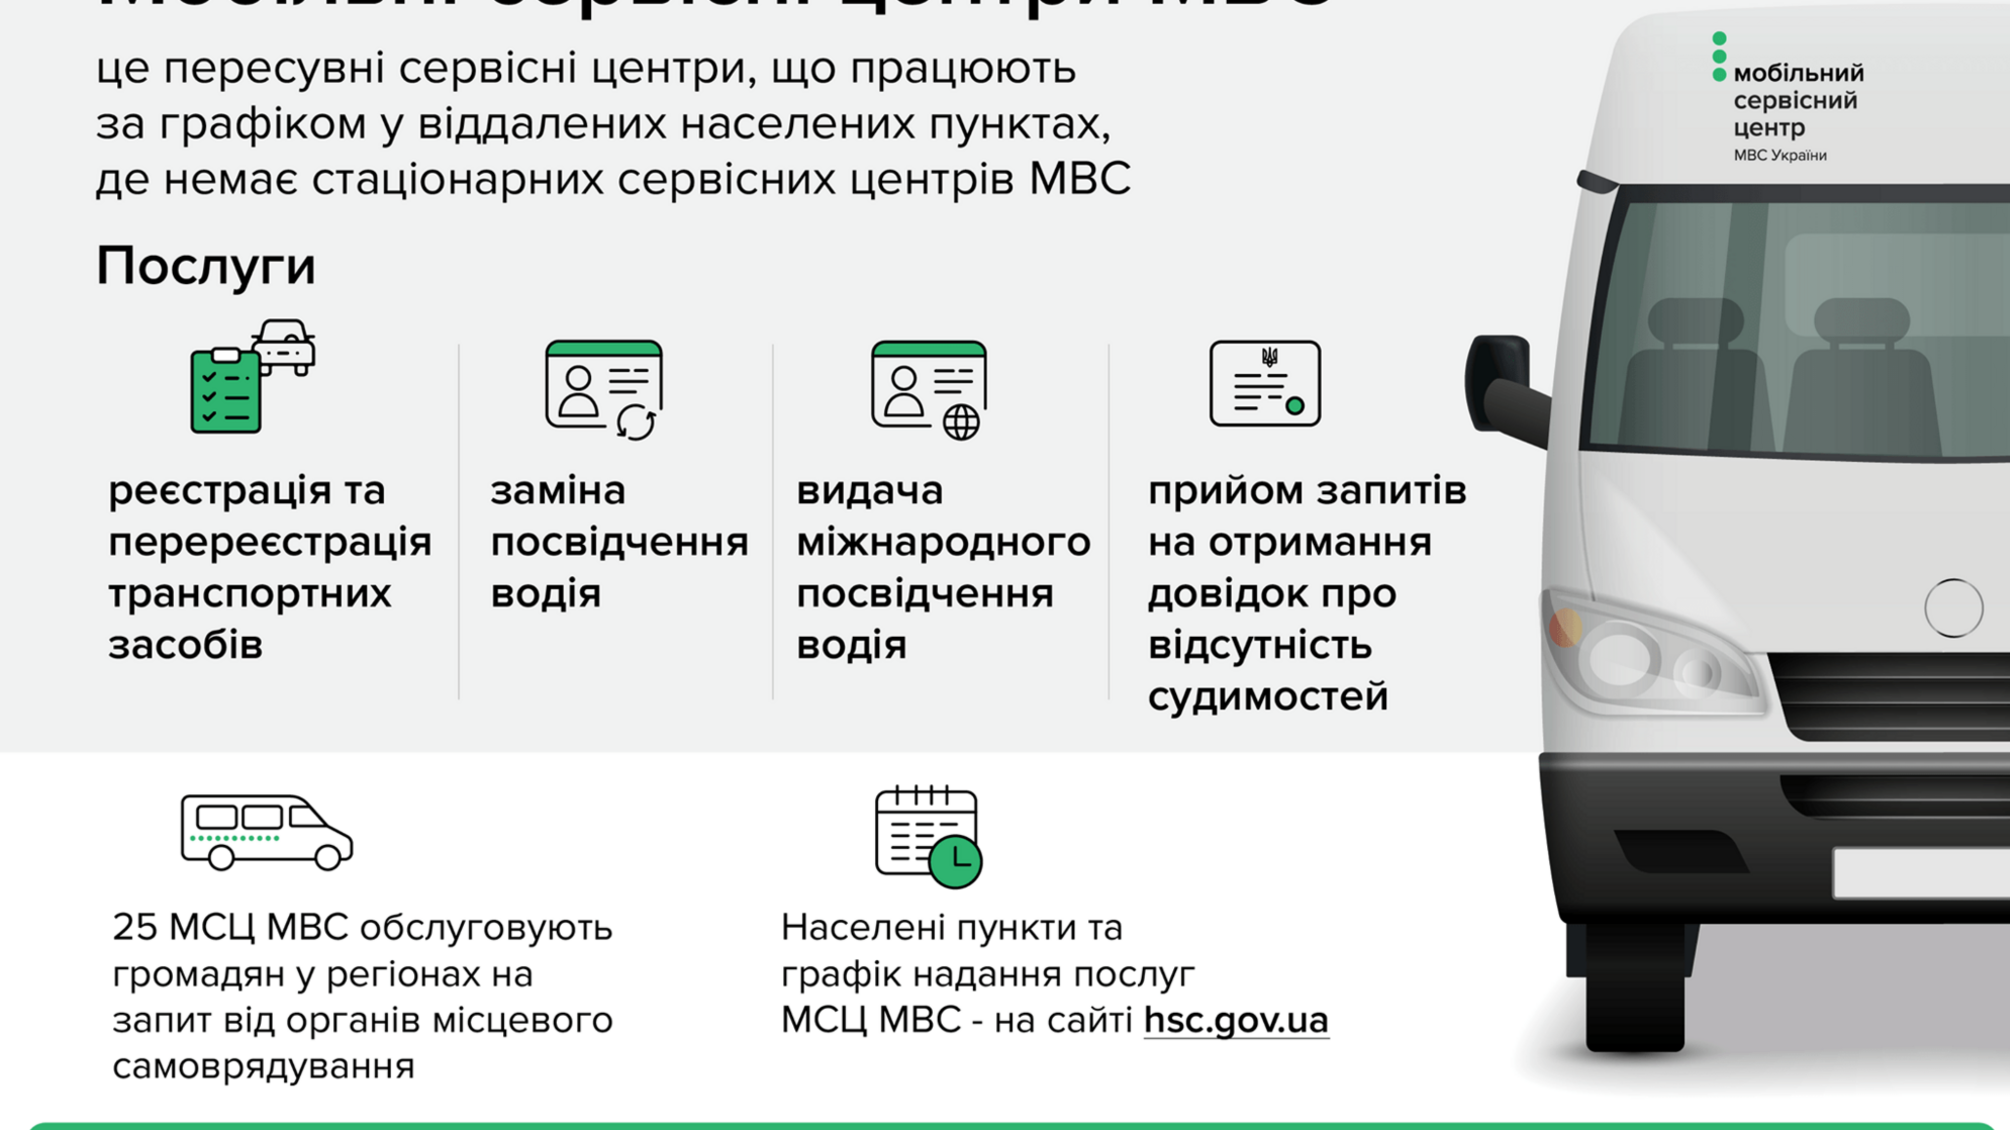 5 лютого мобільний сервісний центр МВС надаватиме послуги в Любашівці